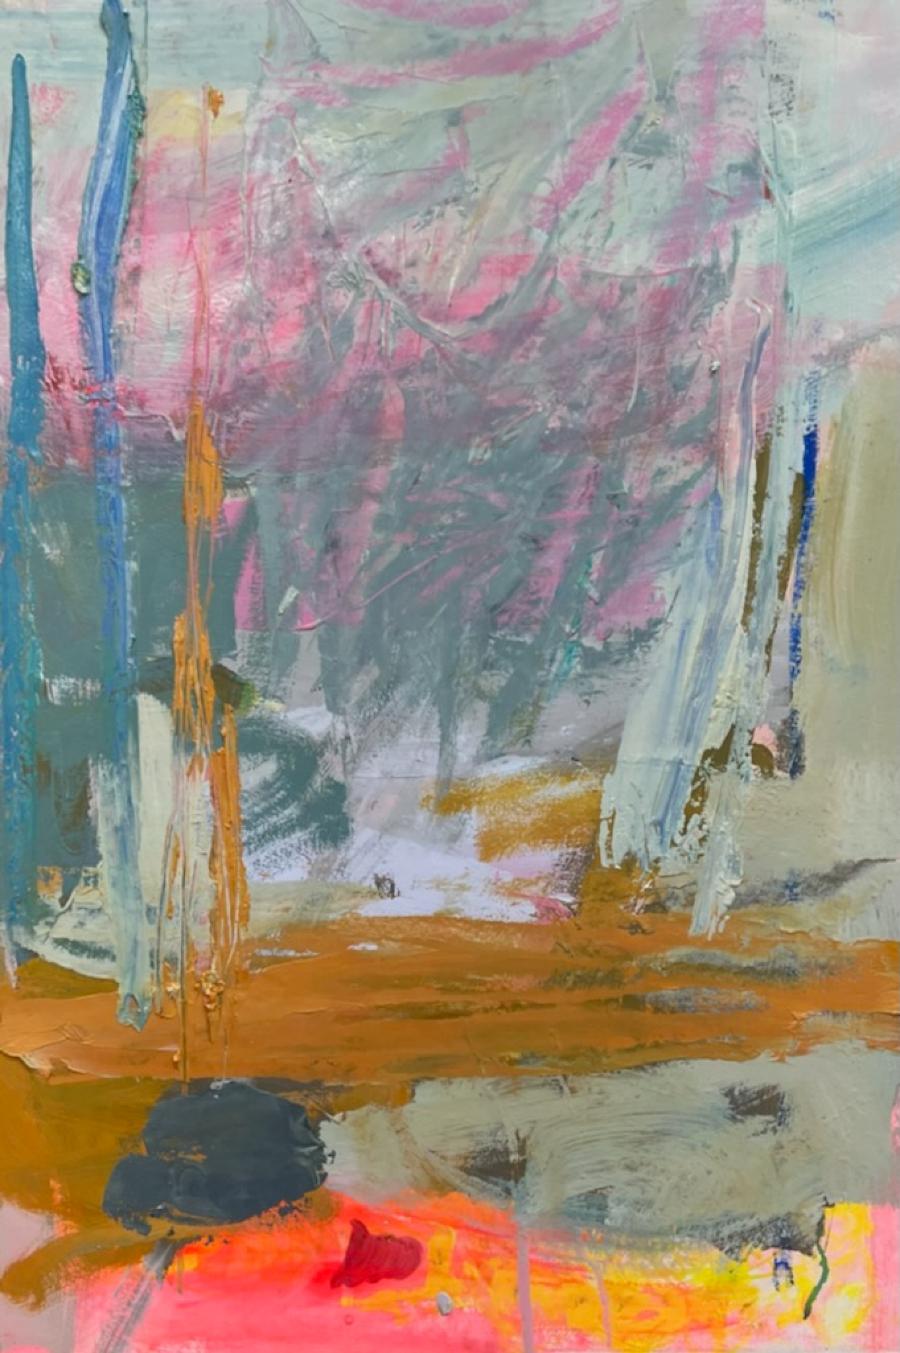 Wind und Regen
28x20
Acryl & Flashe Farbe auf Tafel 2022. 1,75 tief, so dass kein Rahmen erforderlich ist

Die in Houston lebende Künstlerin hat fast ihr ganzes Leben lang Kunst gemacht. Sie wurde an der SMU ausgebildet, wo sie ihren BFA und MFA in